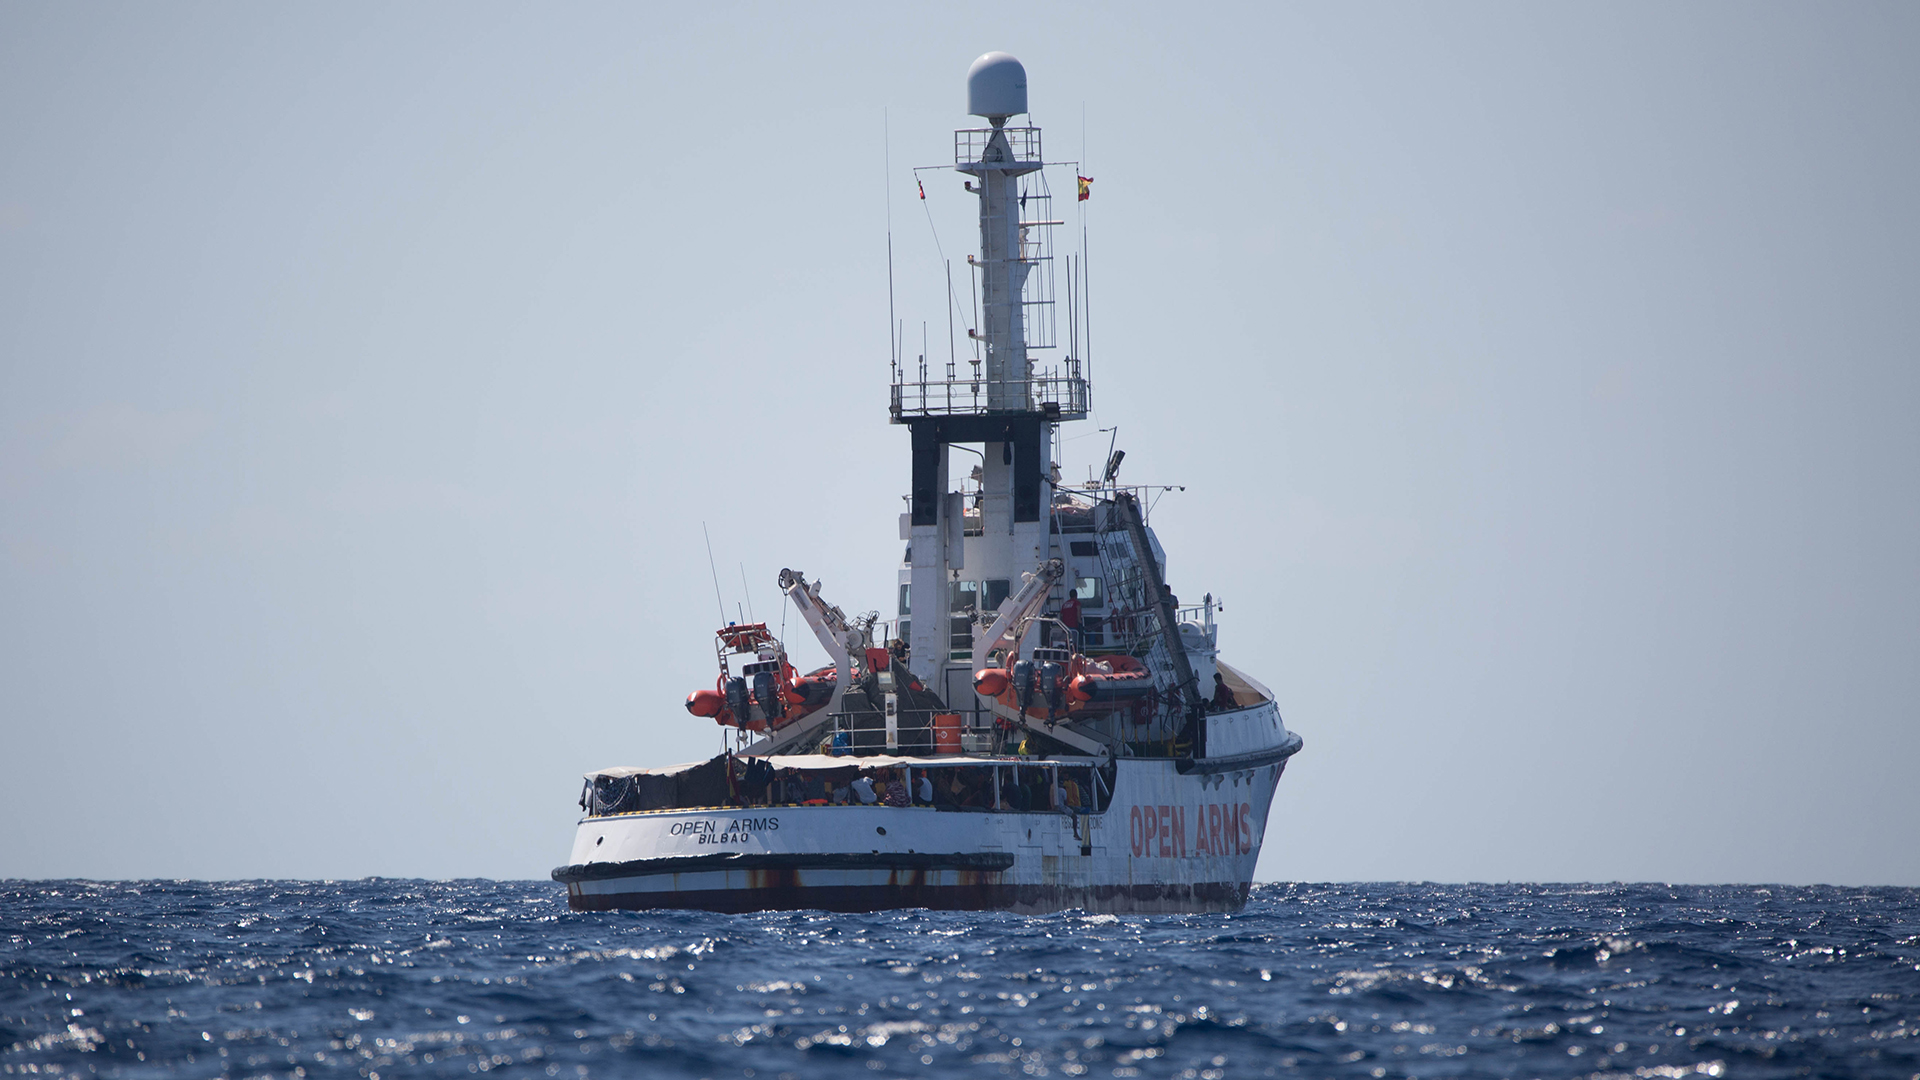 Das Schiff "Open Arms" der Hilfsorganisation Proactiva Open Arms wartet im Mittelmeer vor der Küste Lampedusas